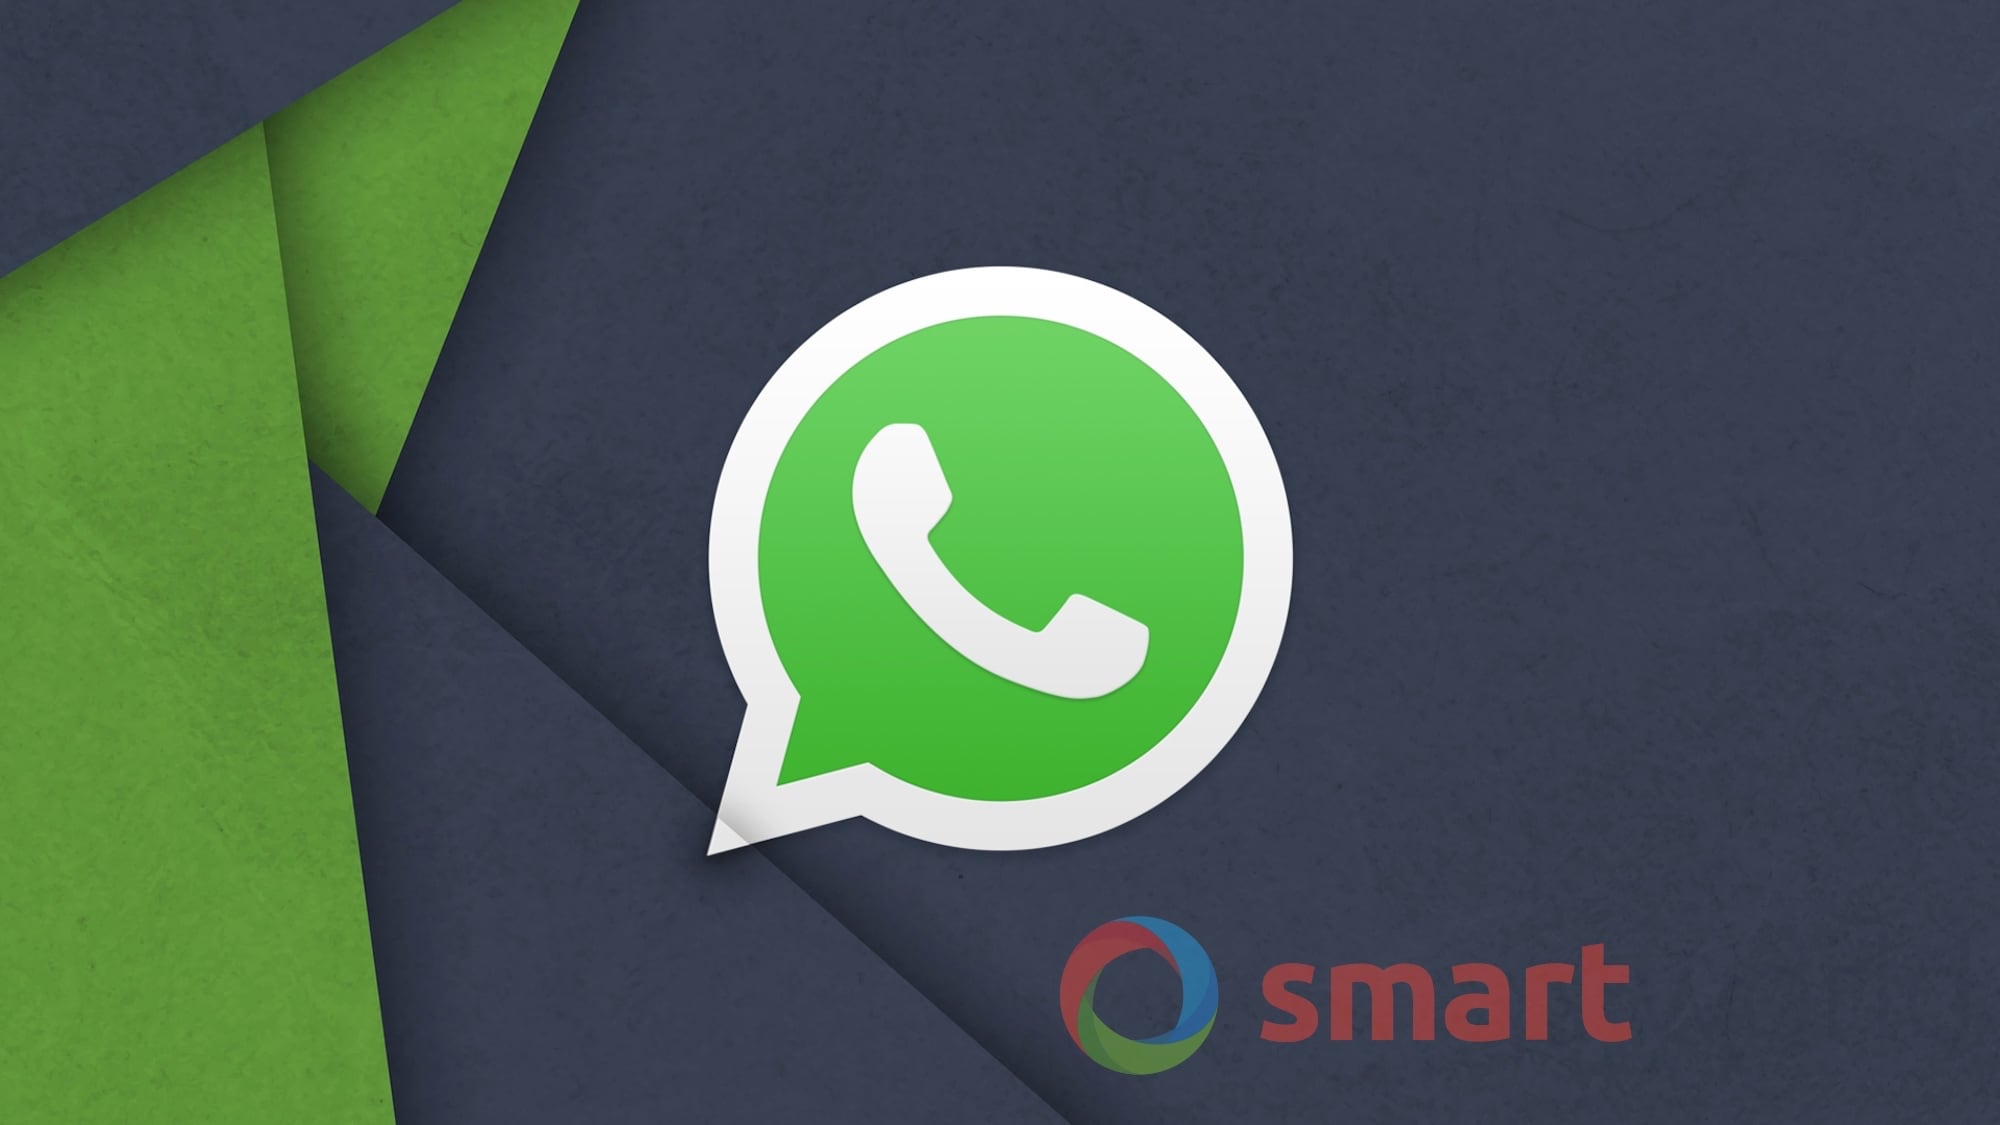 WhatsApp Beta si aggiorna: ecco le nuove emoji appena arrivate (foto)